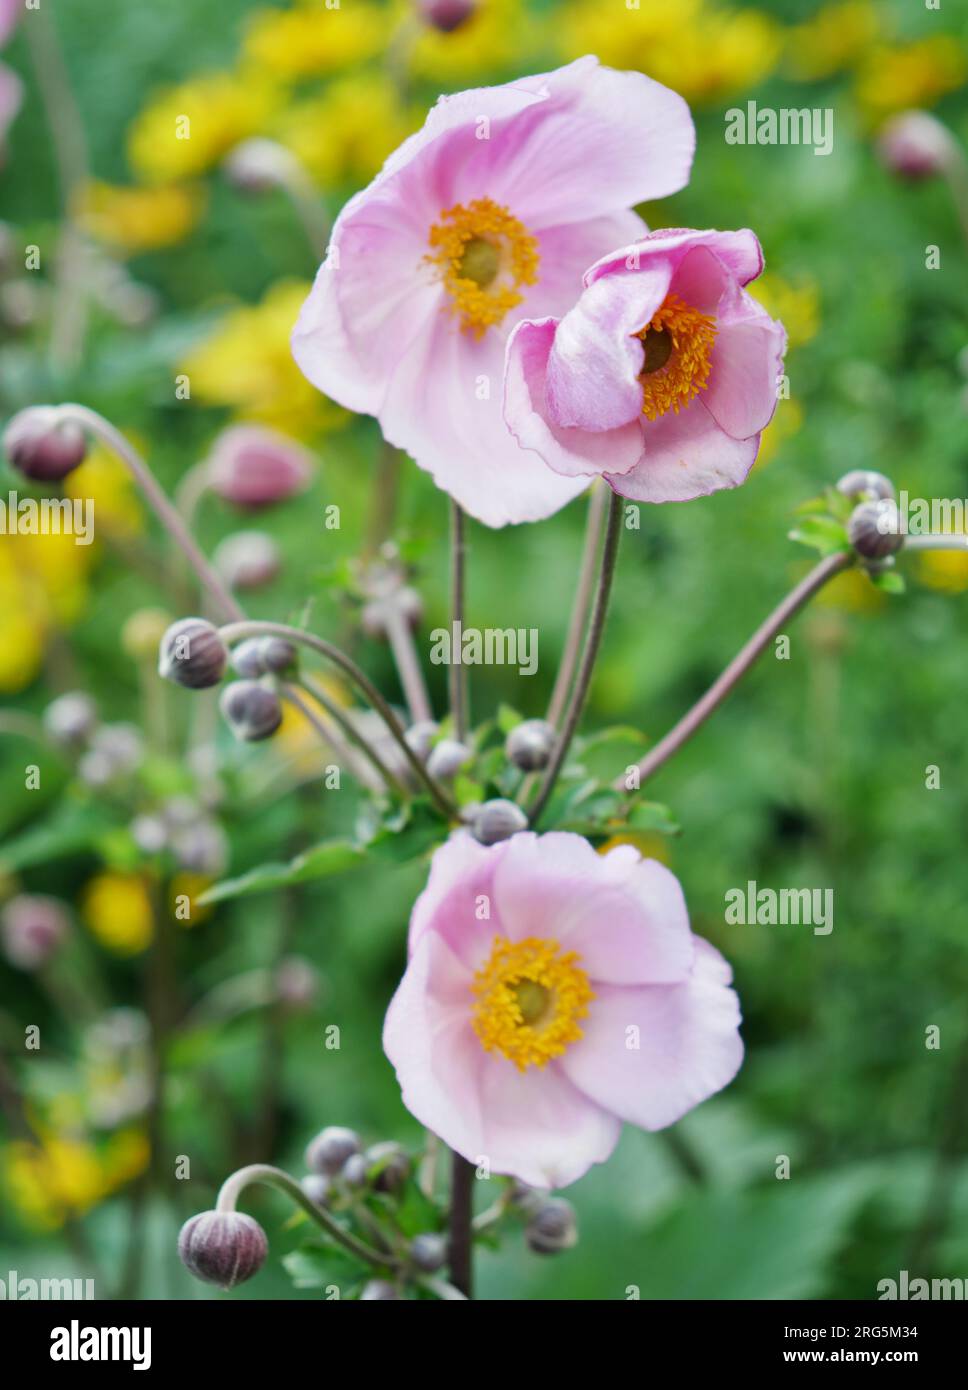 rosa Herbst-Anemone mit gelben Blumen im Hintergrund Stock Photo